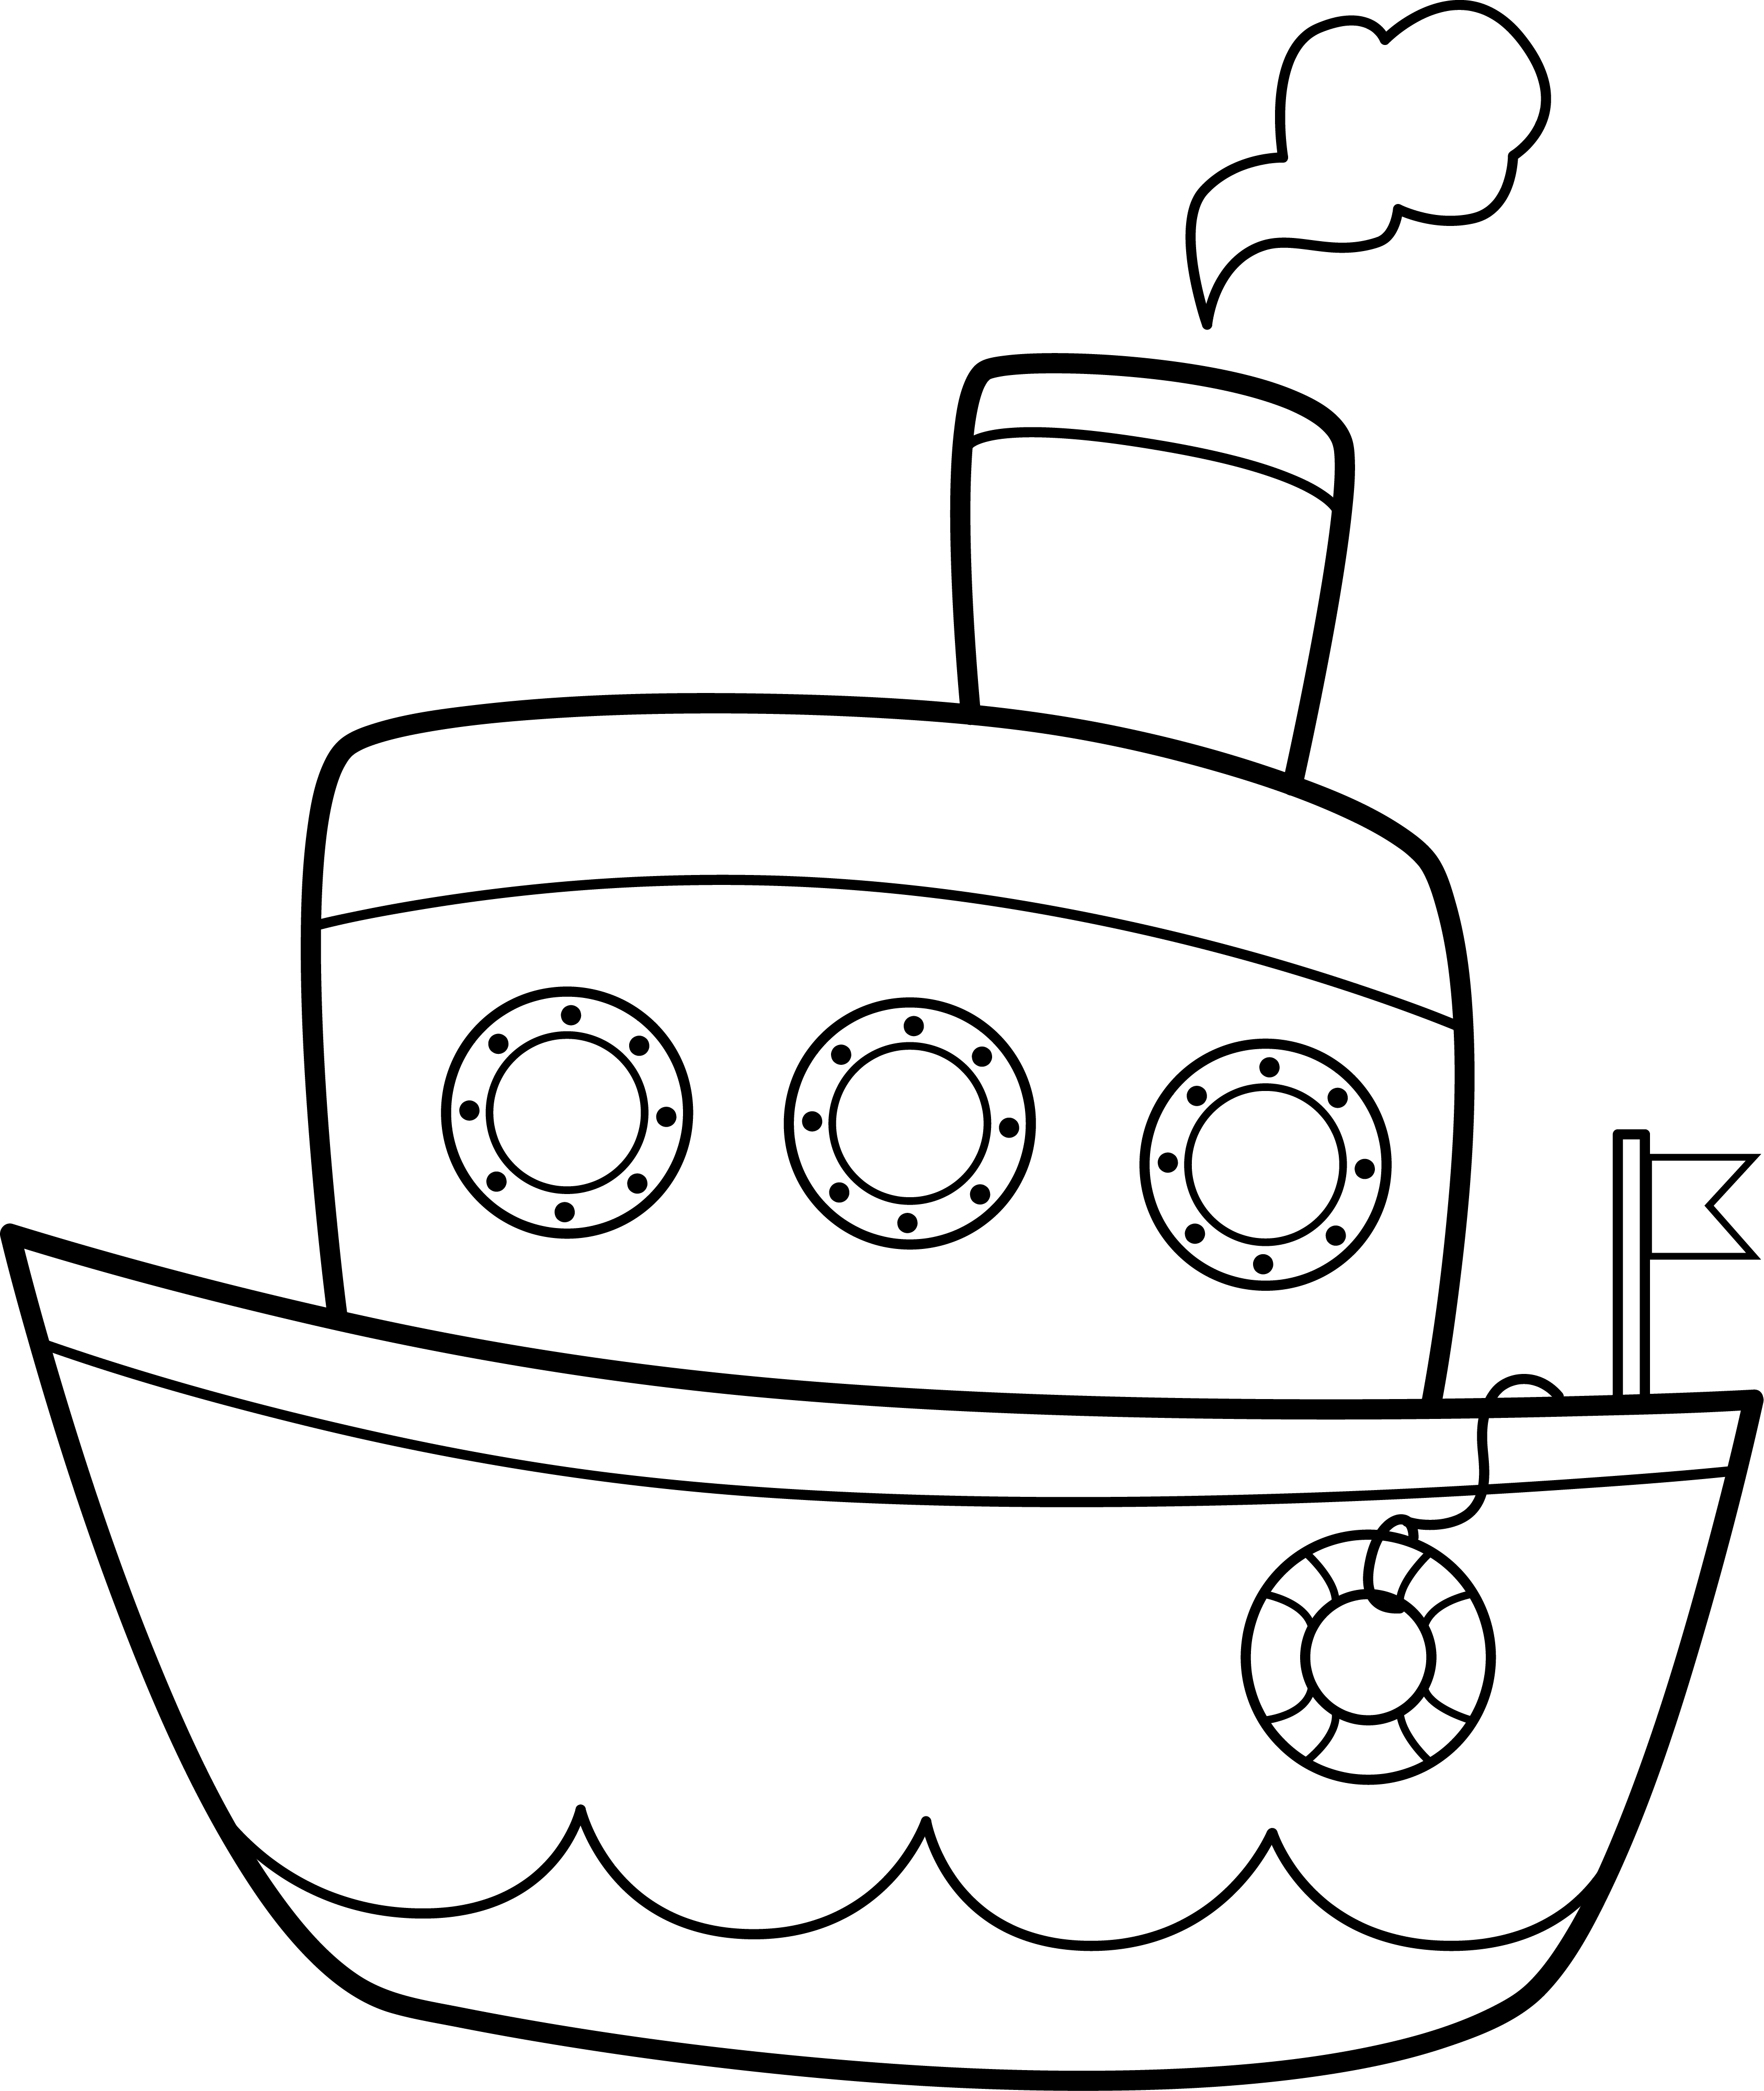 Раскраска игрушечный кораблик с иллюминаторами и паром из трубы формата А4 в высоком качестве